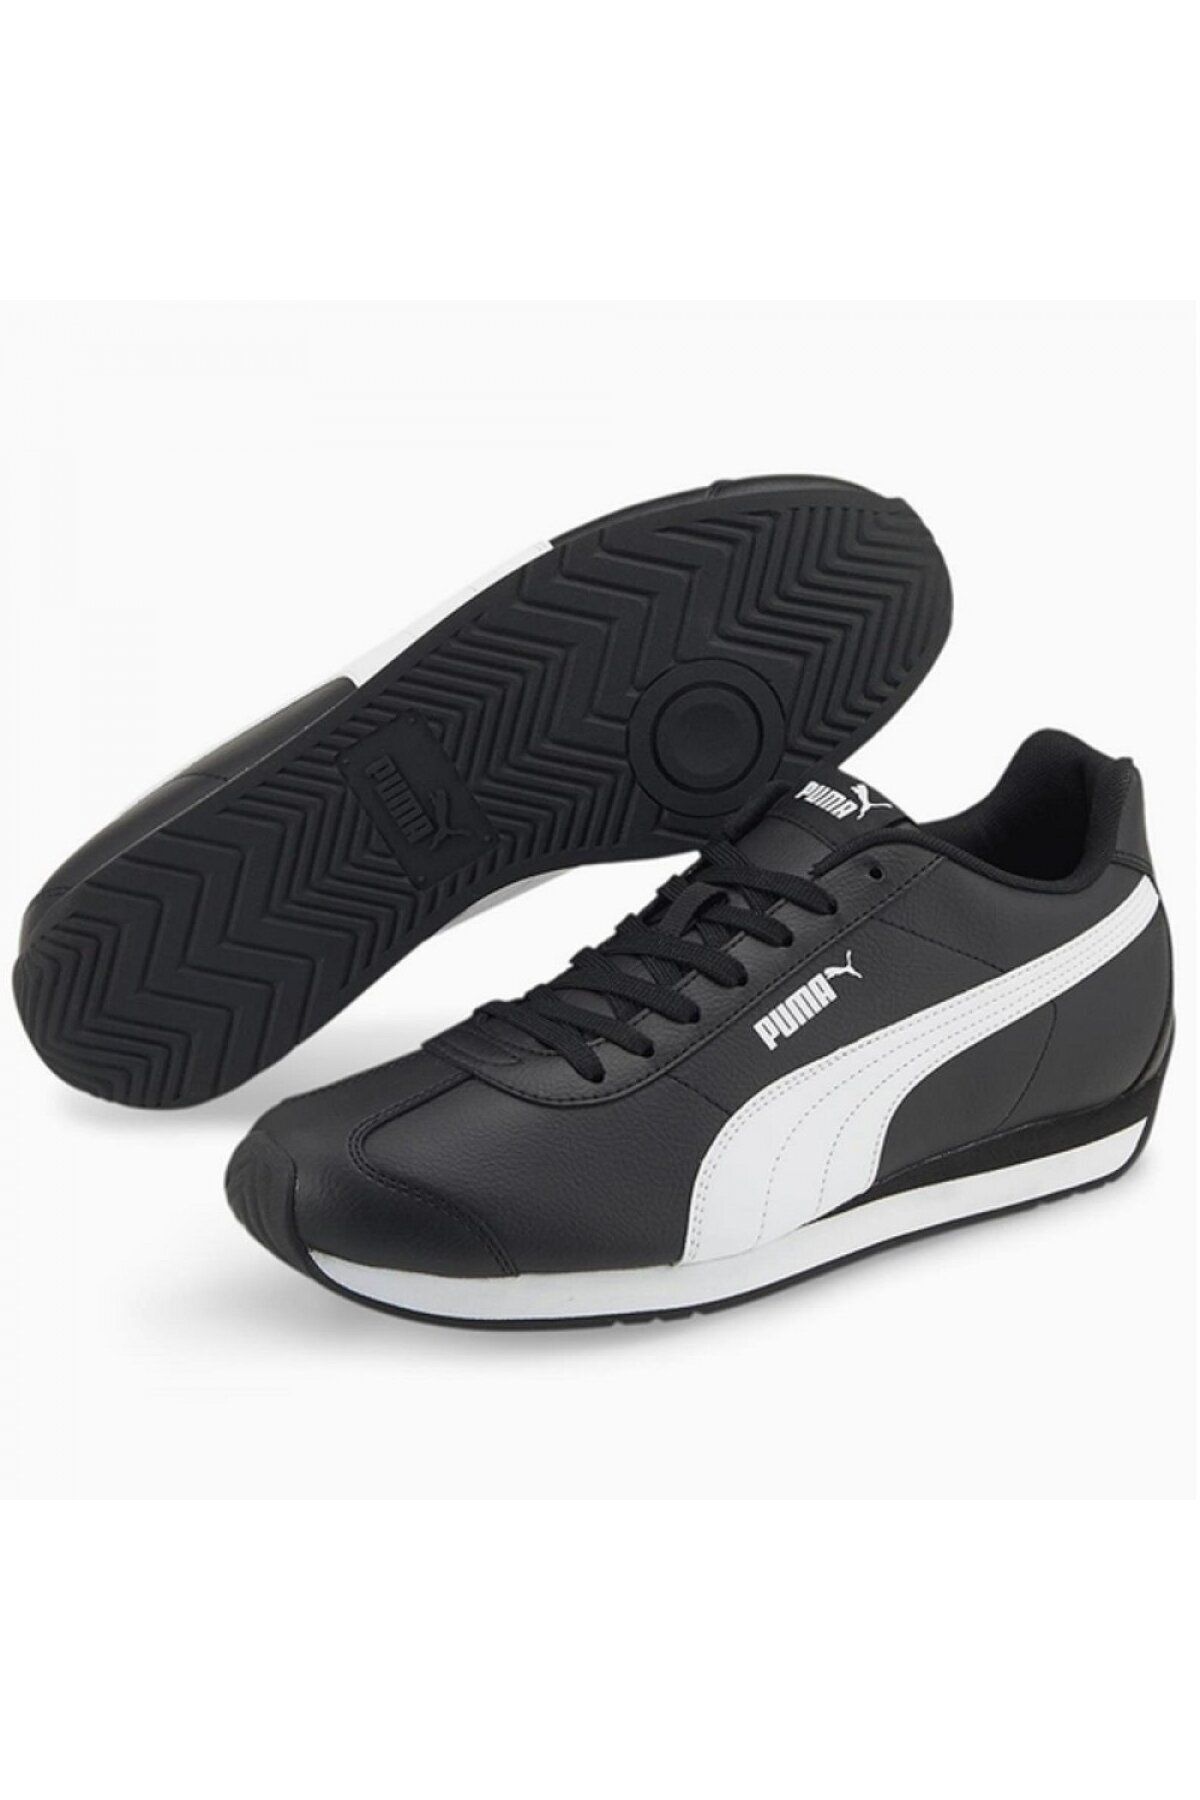 Puma 383037 05 Turin 3 Siyah-Beyaz Günlük Spor Ayakkabı